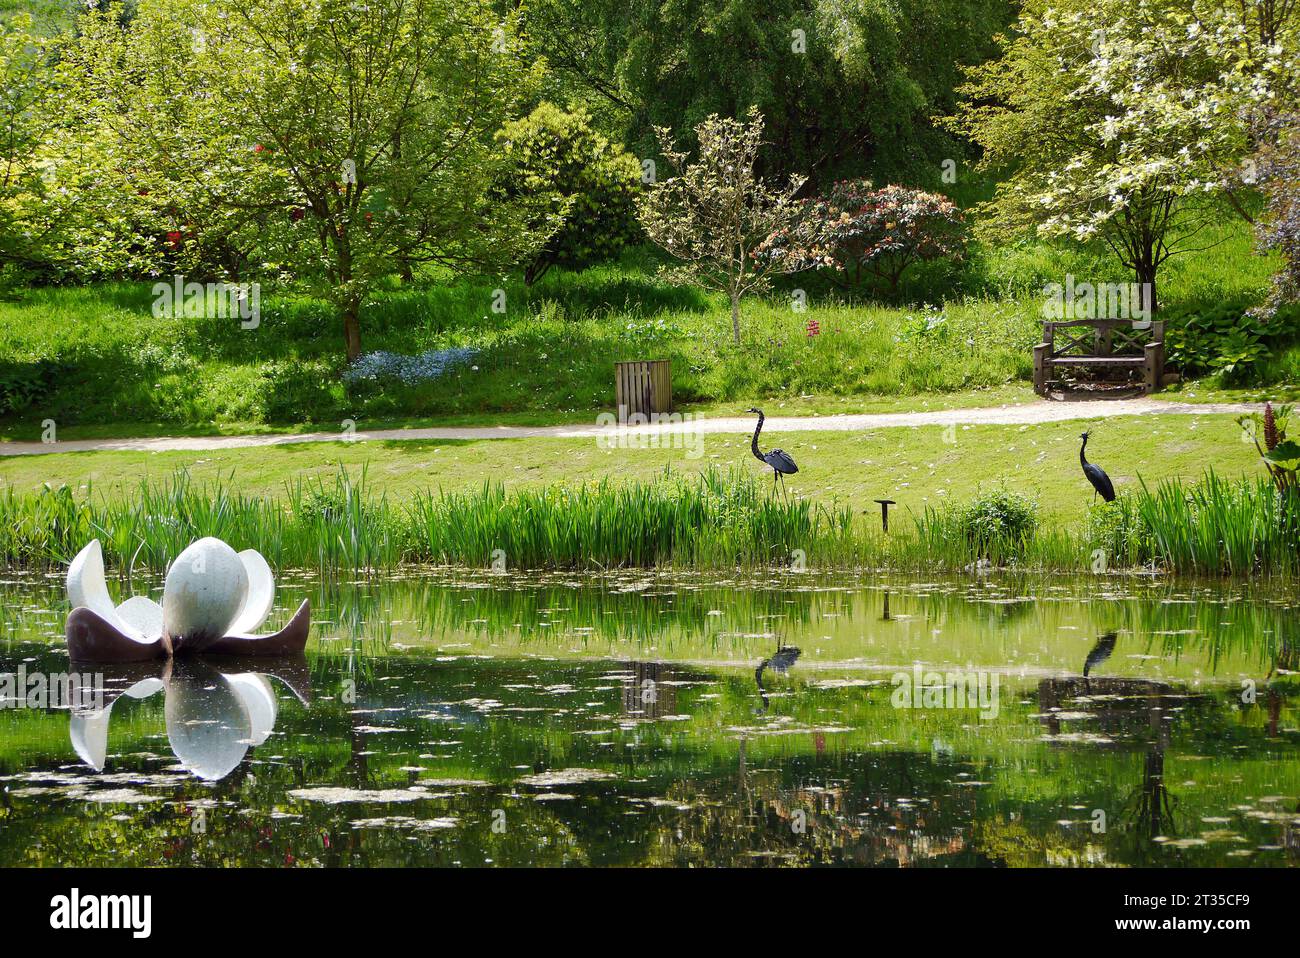 Lys flottant avec Heron & Crane sculptures reflétées dans le lac Magnolia à l'Himalayan Garden & Sculpture Park, North Yorkshire, Angleterre, Royaume-Uni. Banque D'Images